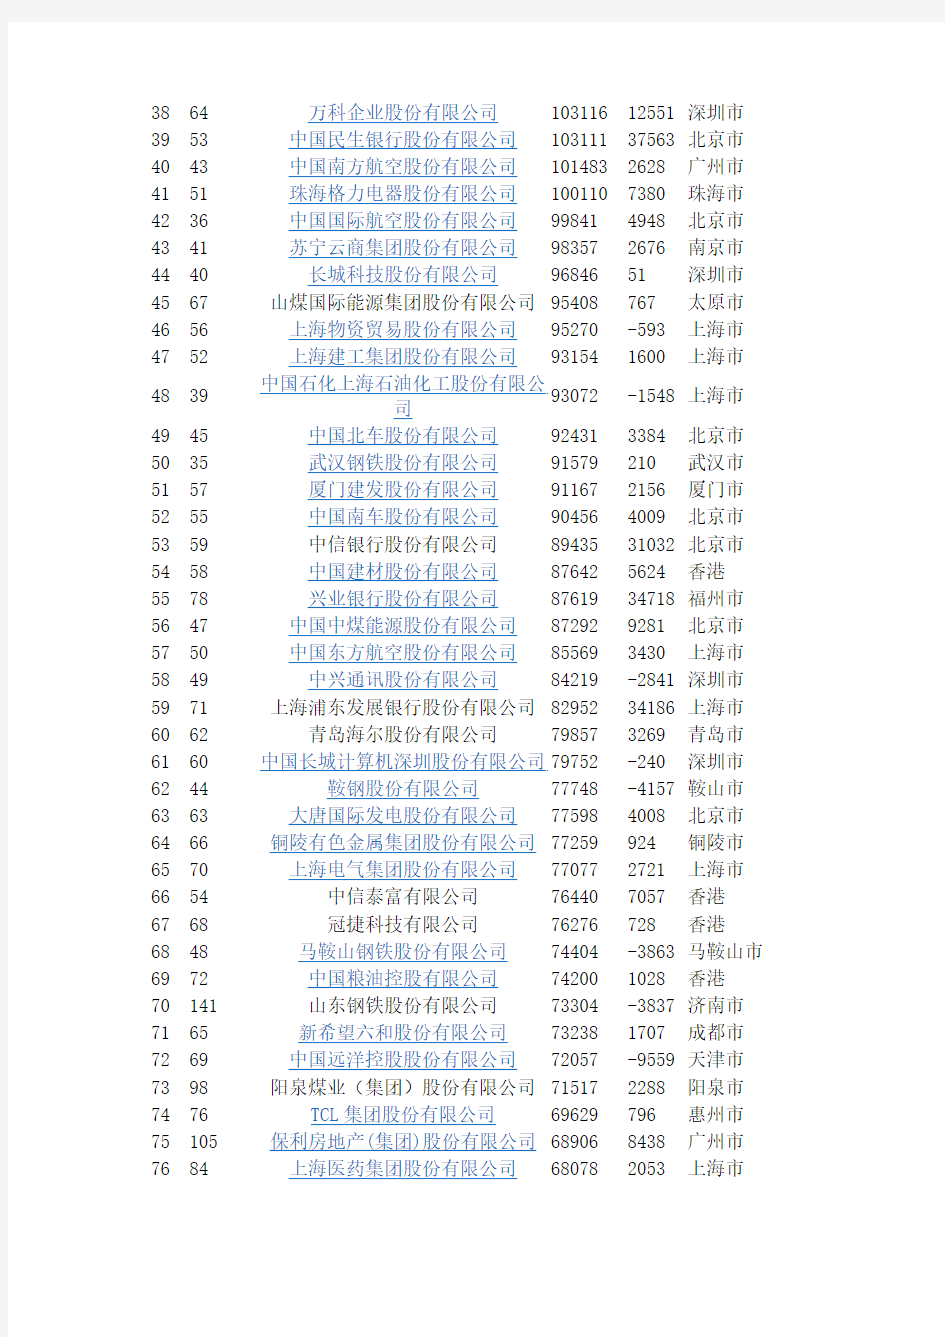 2013中国企业500强榜单